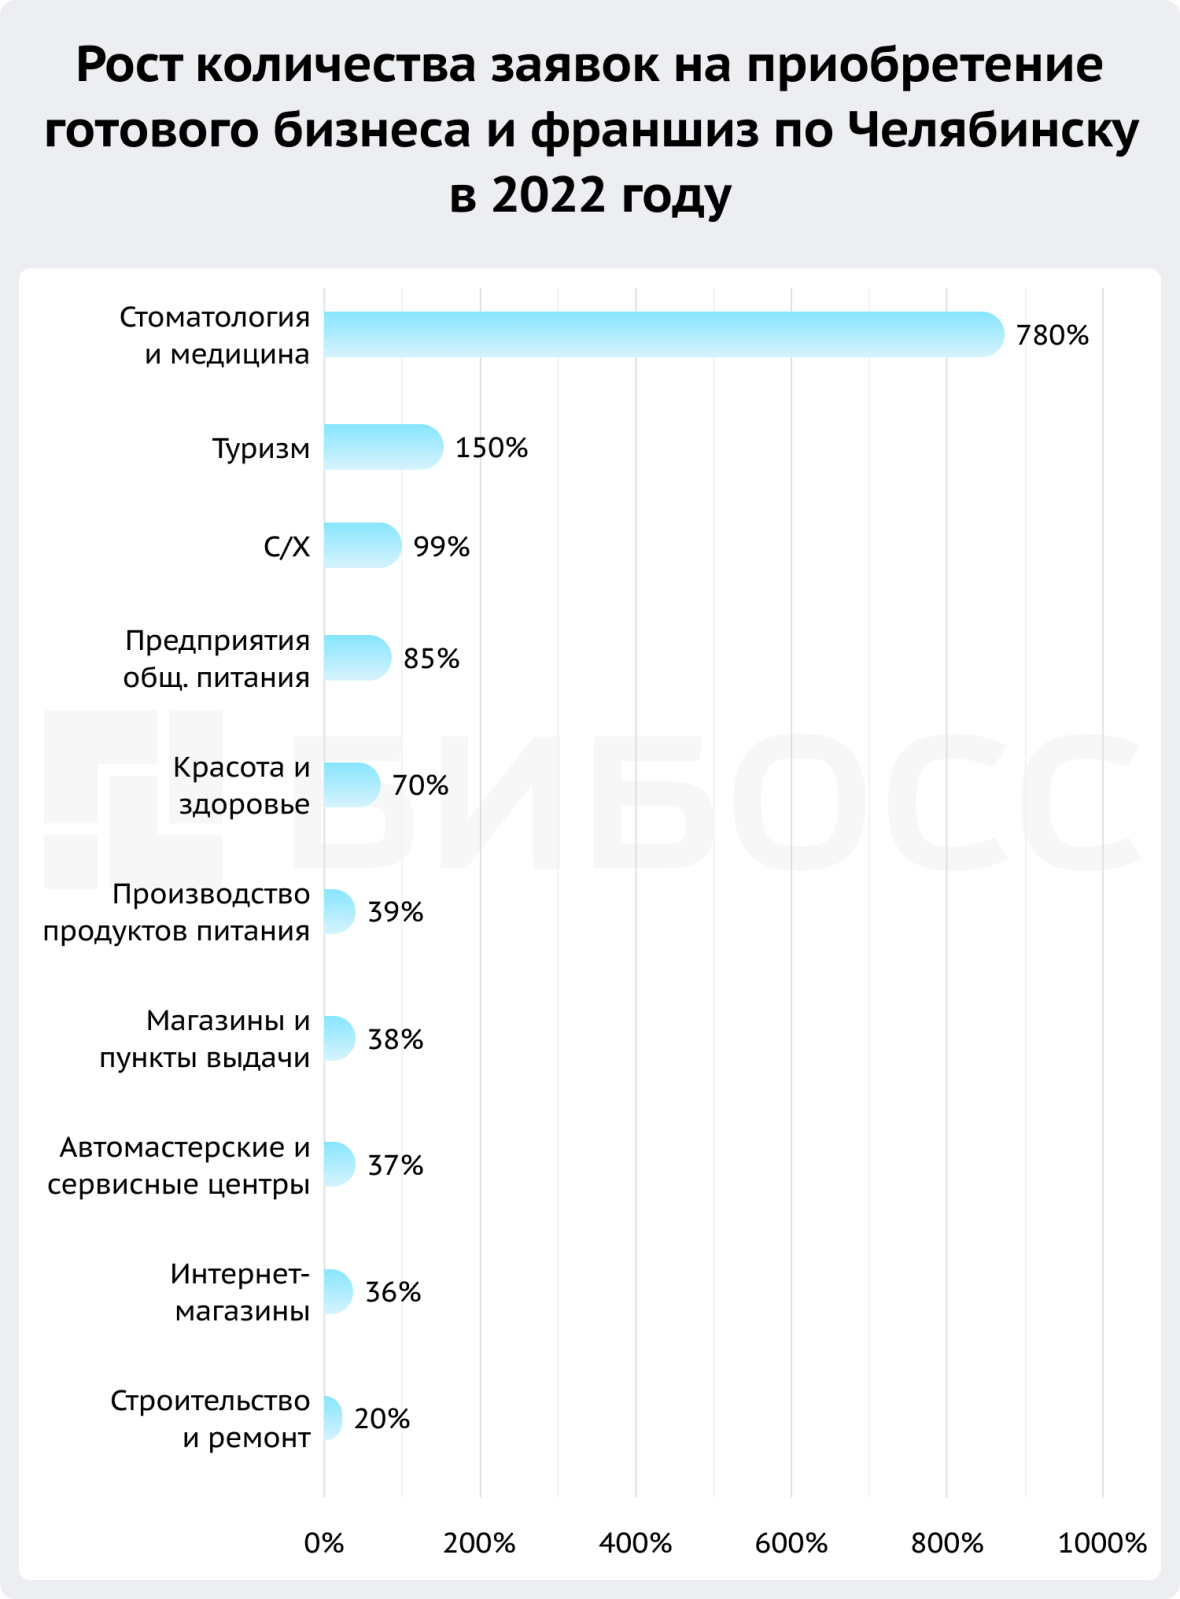 рост количества заявок на приобретение готового бизнеса и франшиз в Челябинске